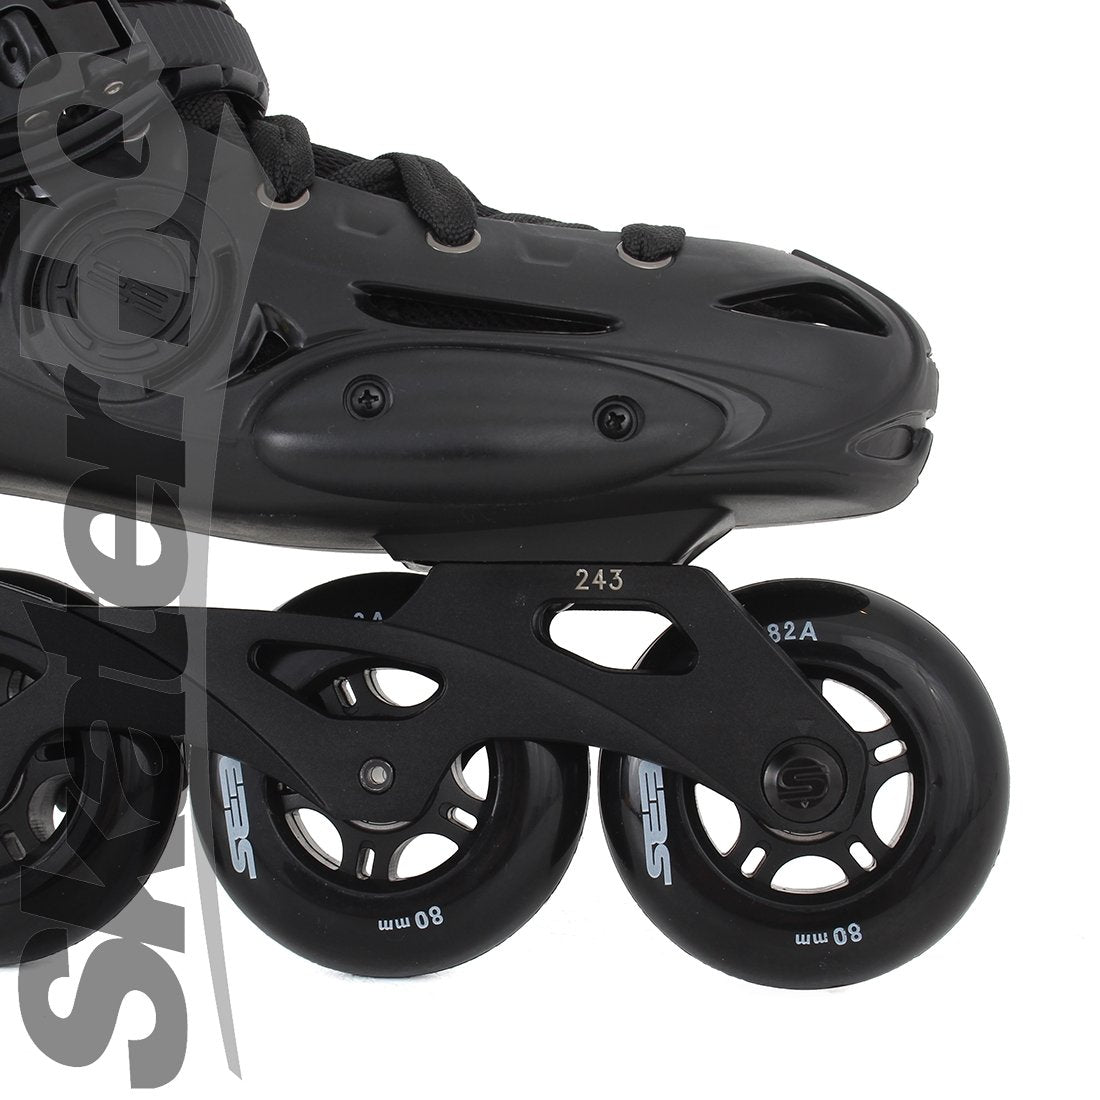 Seba E3 80 Premium Black - 4.5US EU36 Inline Rec Skates